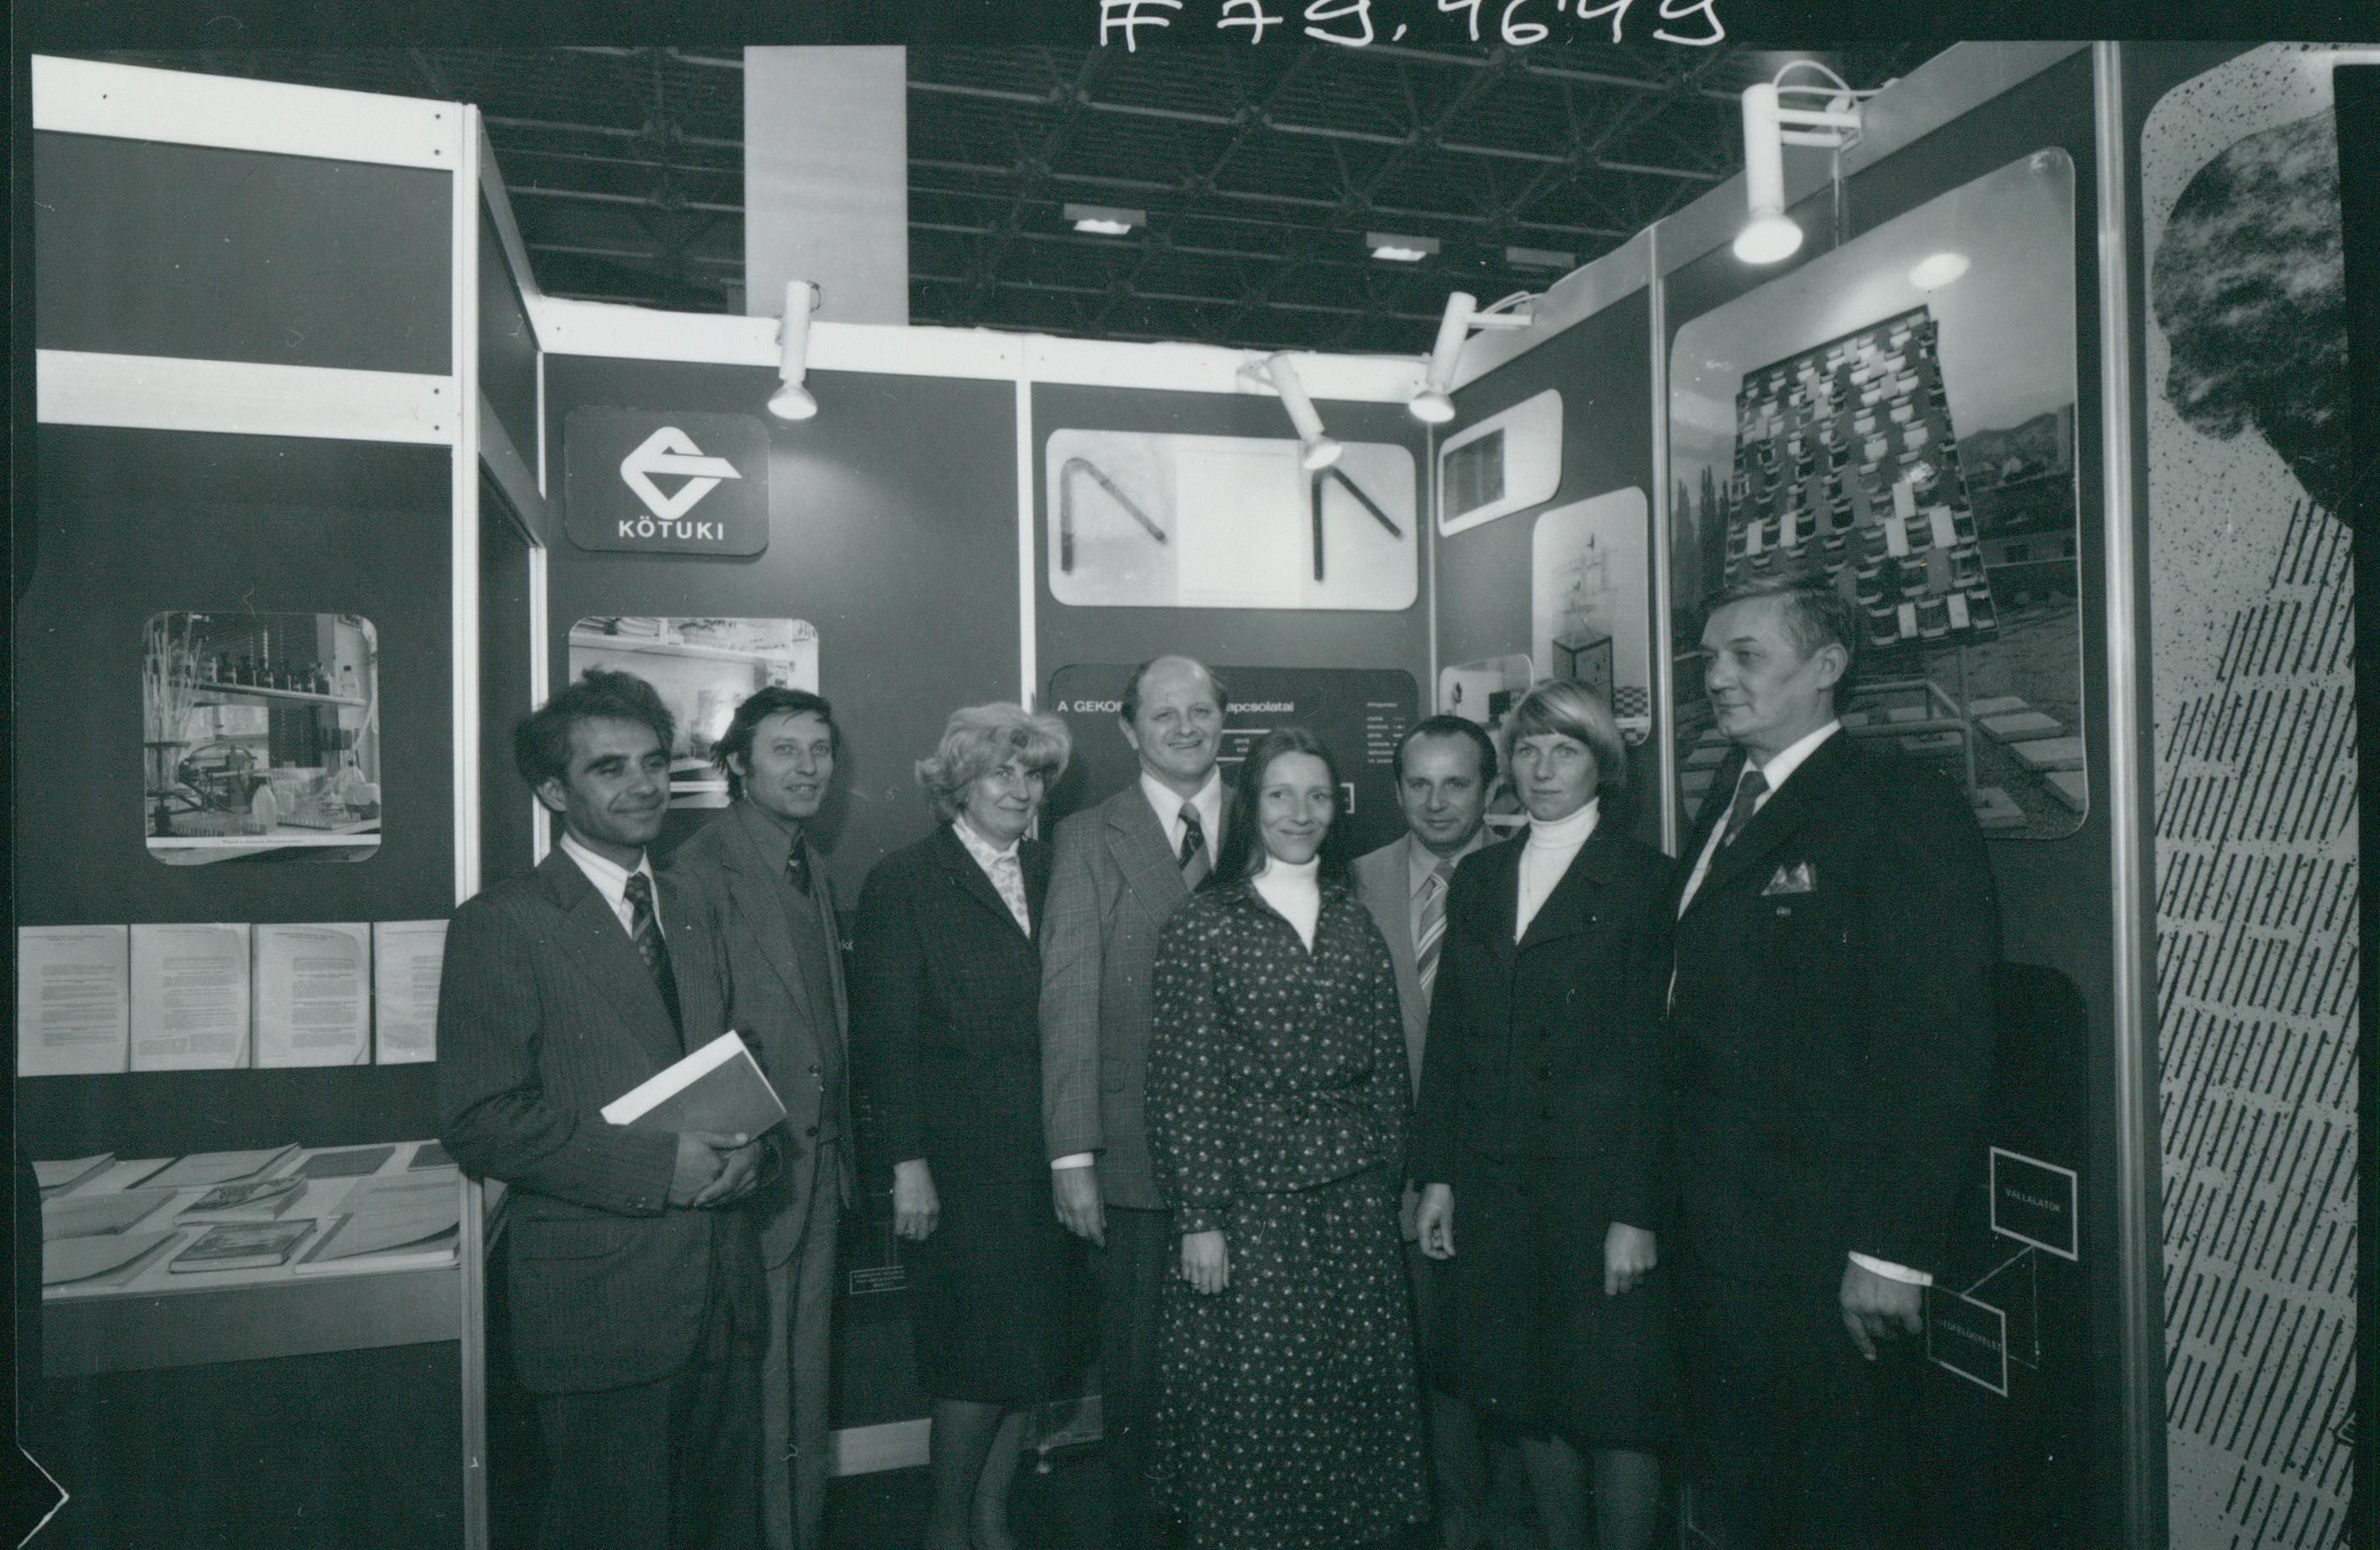 Az 1979-es HUNGAROKORR Nemzetközi Korrózióvédelmi Kiállítás résztvevői